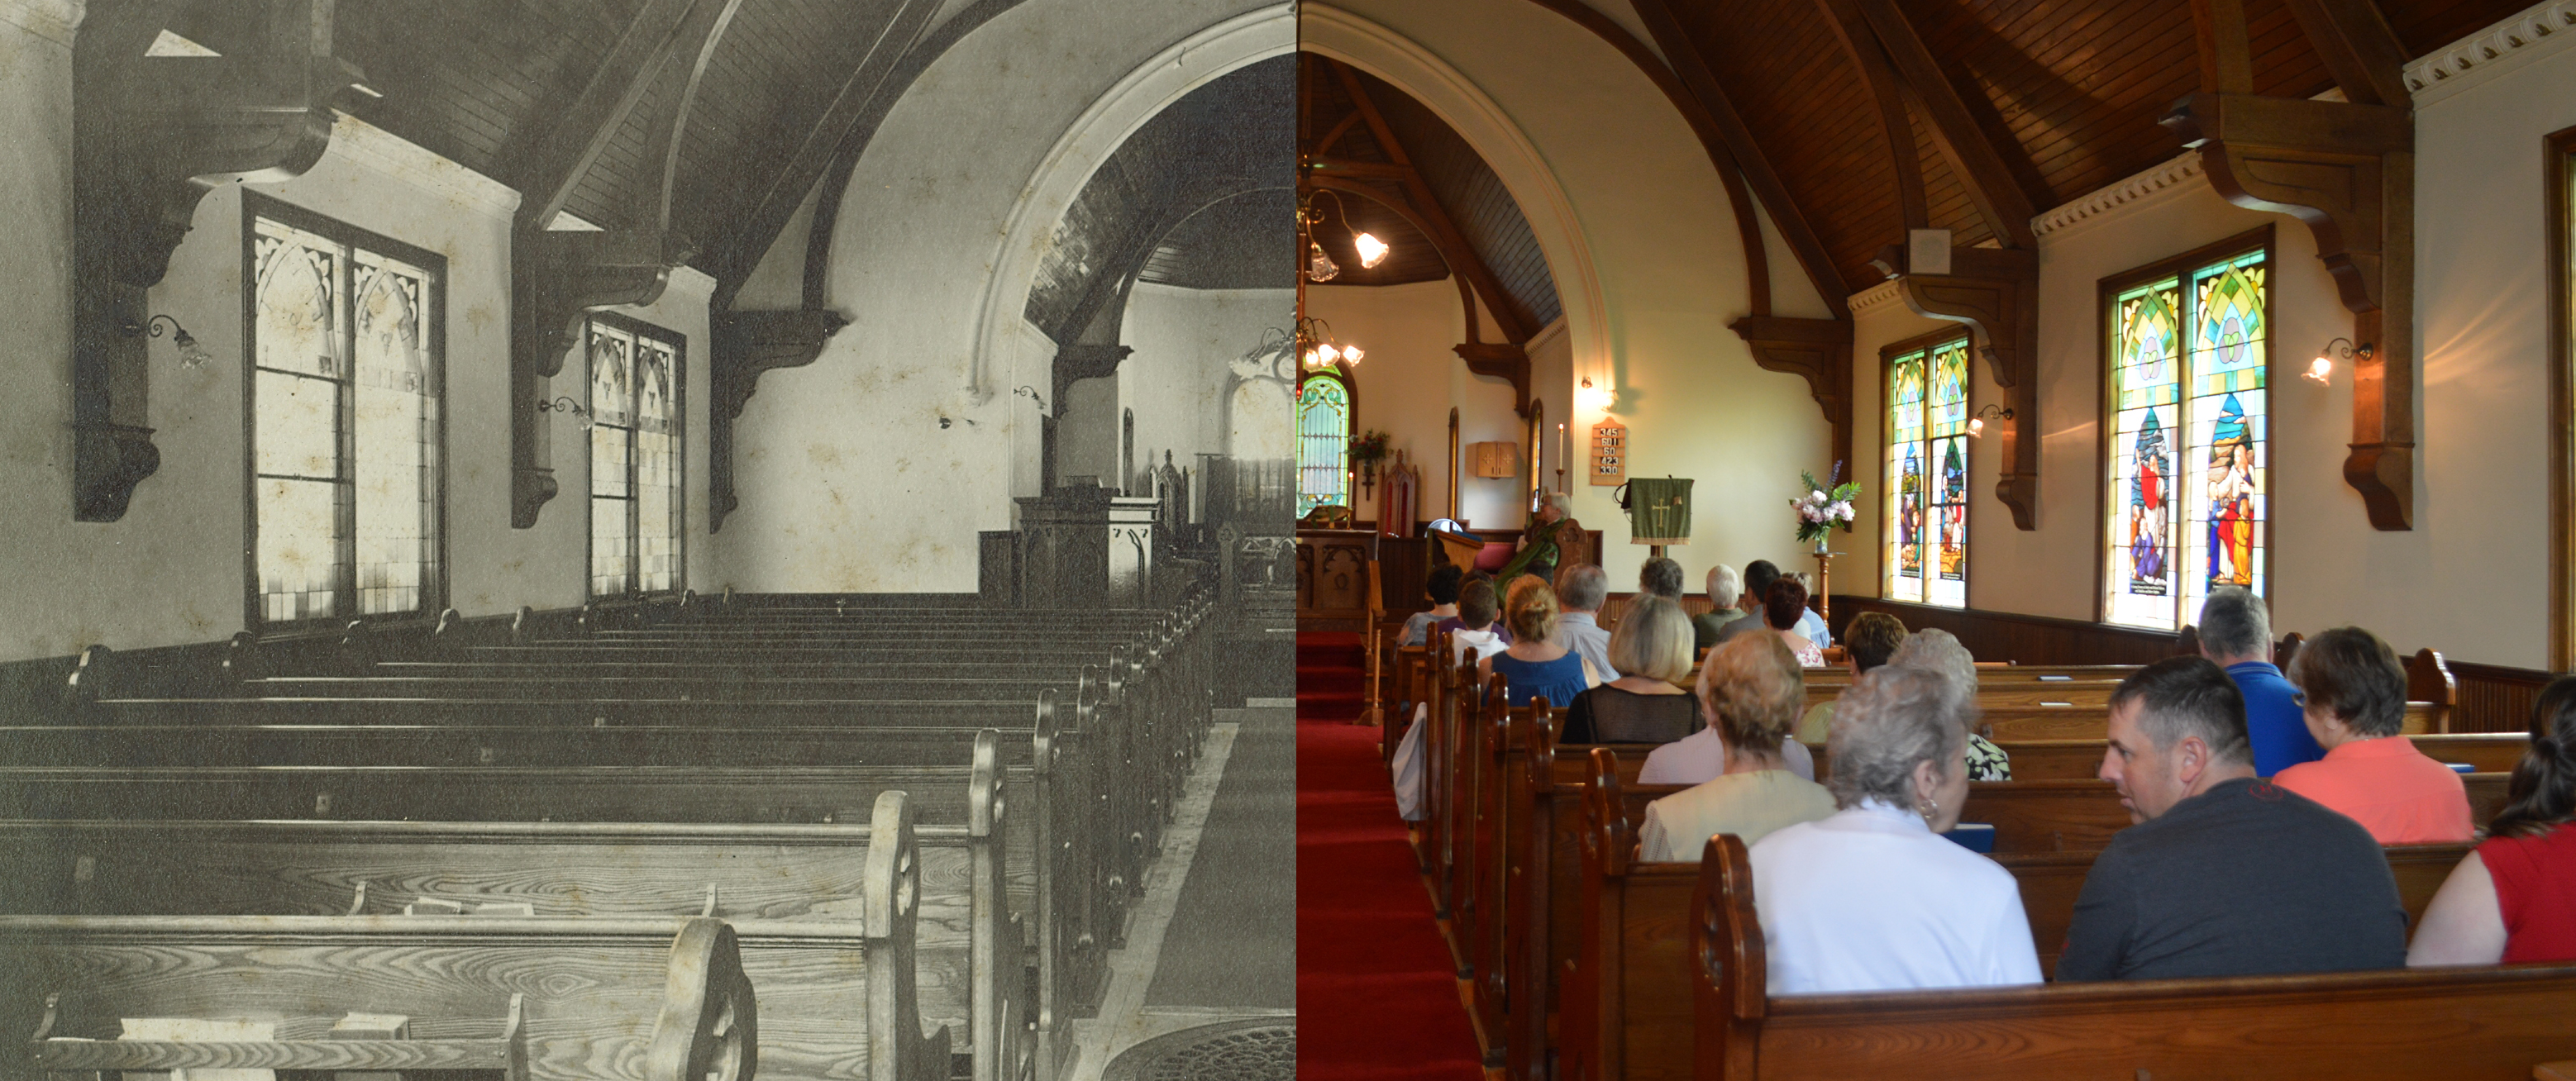 L'intérieur d'une église : à gauche, une photo en noir et blanc illustrant une église vide; à droit, une image contemporaine de la même église pleine de personnes.